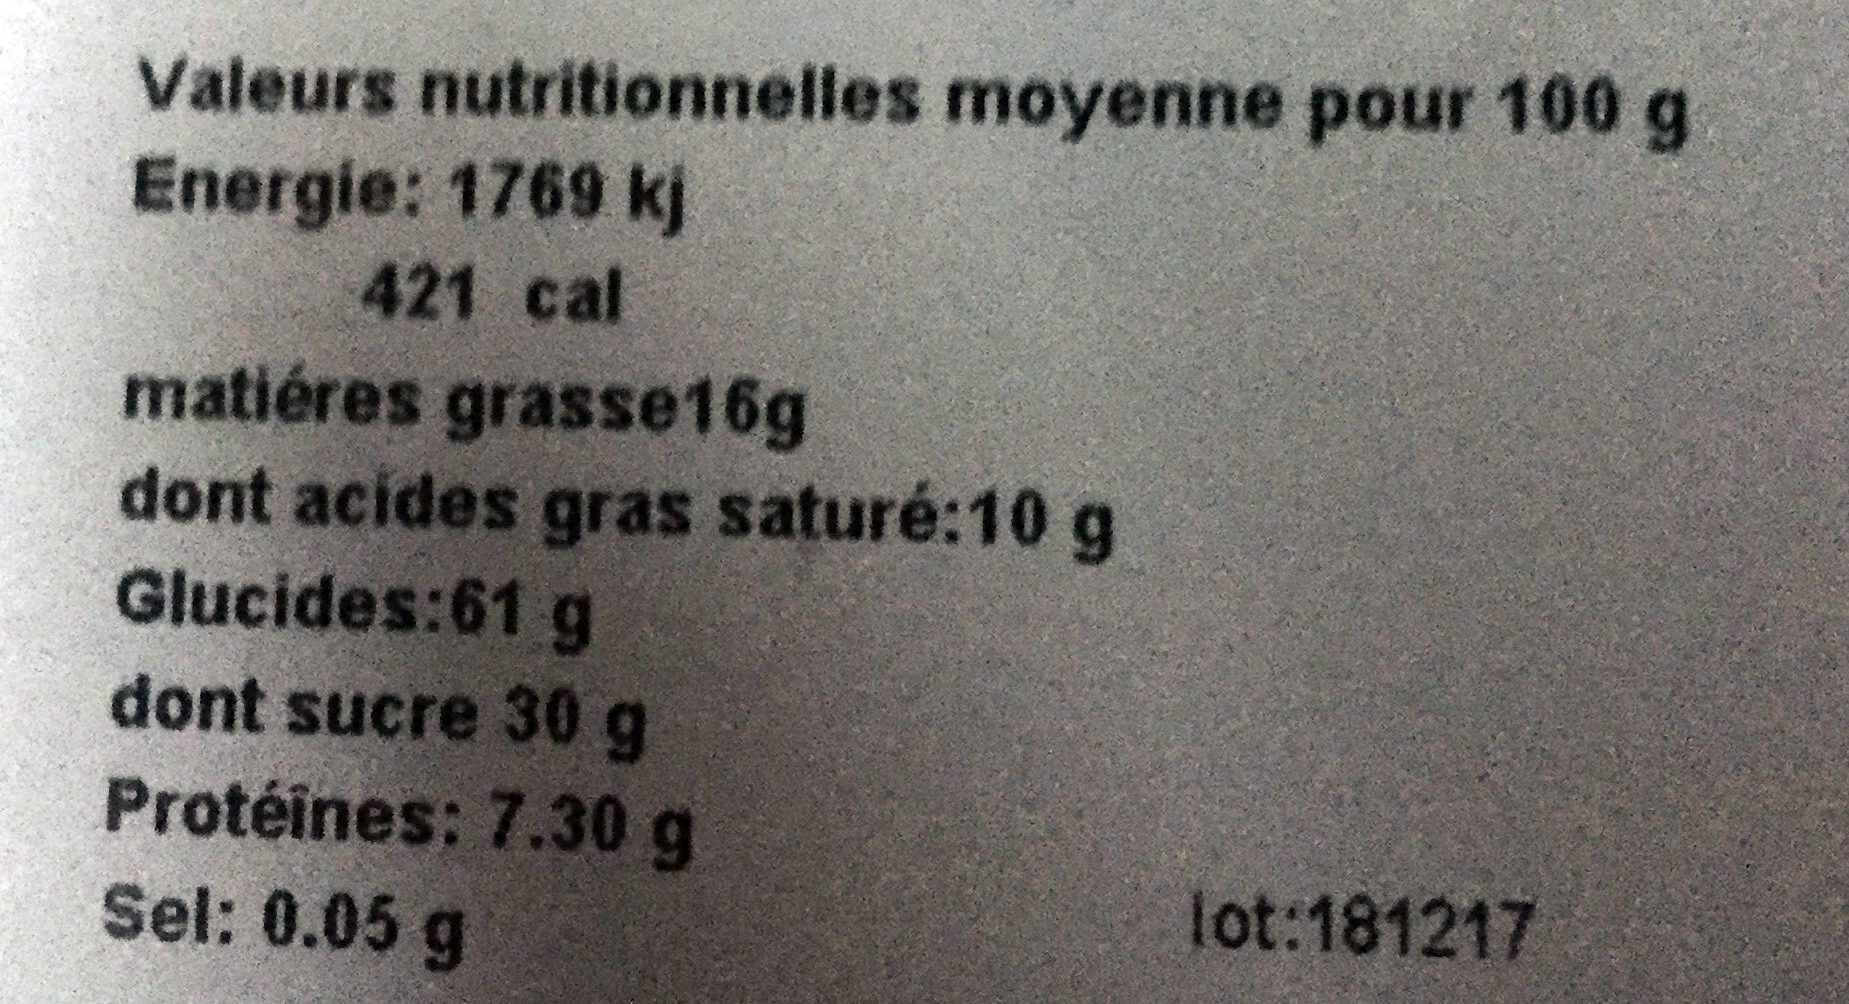 L'authentique - Tarte aux myrtille - Tableau nutritionnel